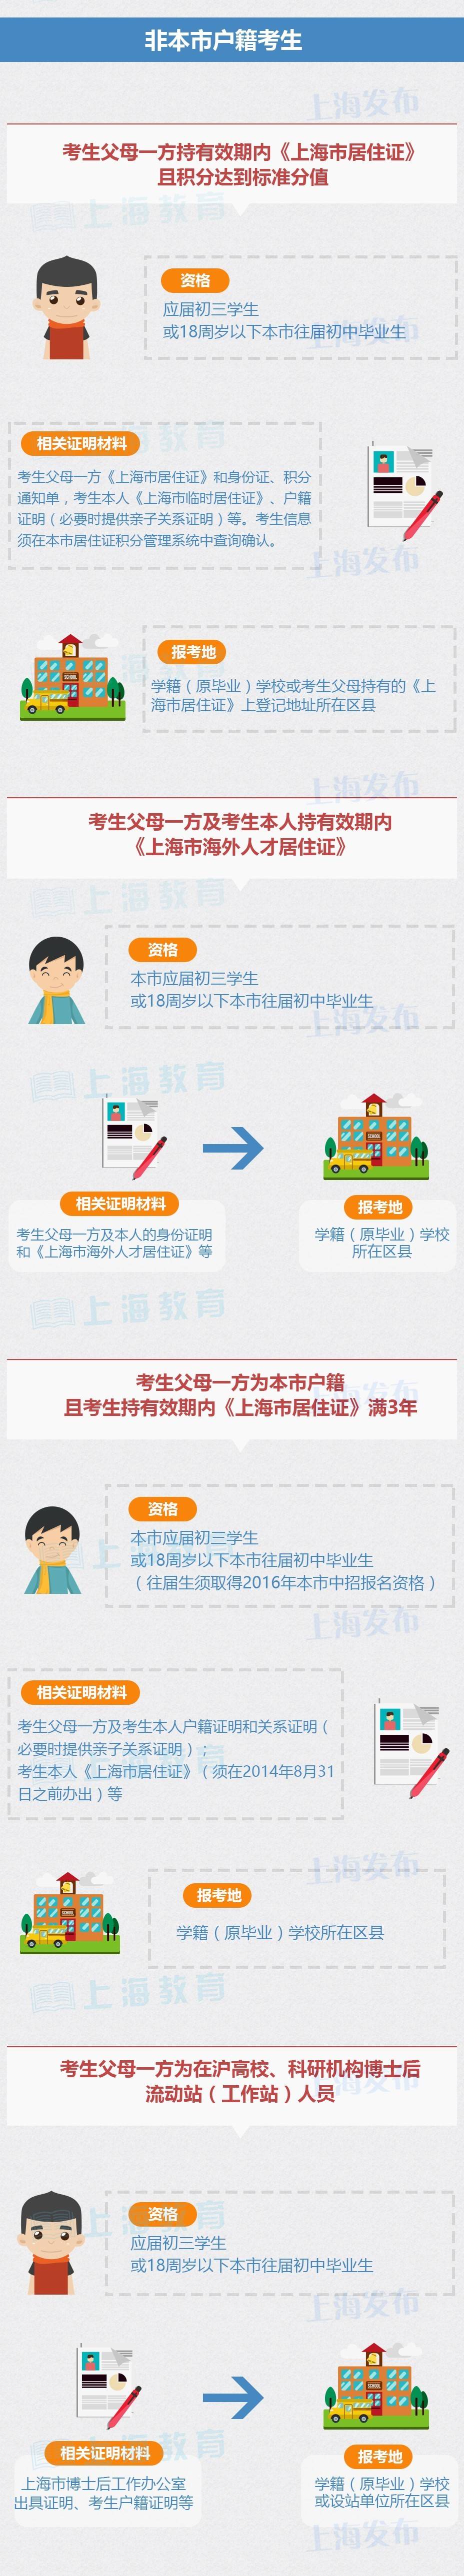 2017年上海中考即将报名 沪籍非沪籍报考条件一览2